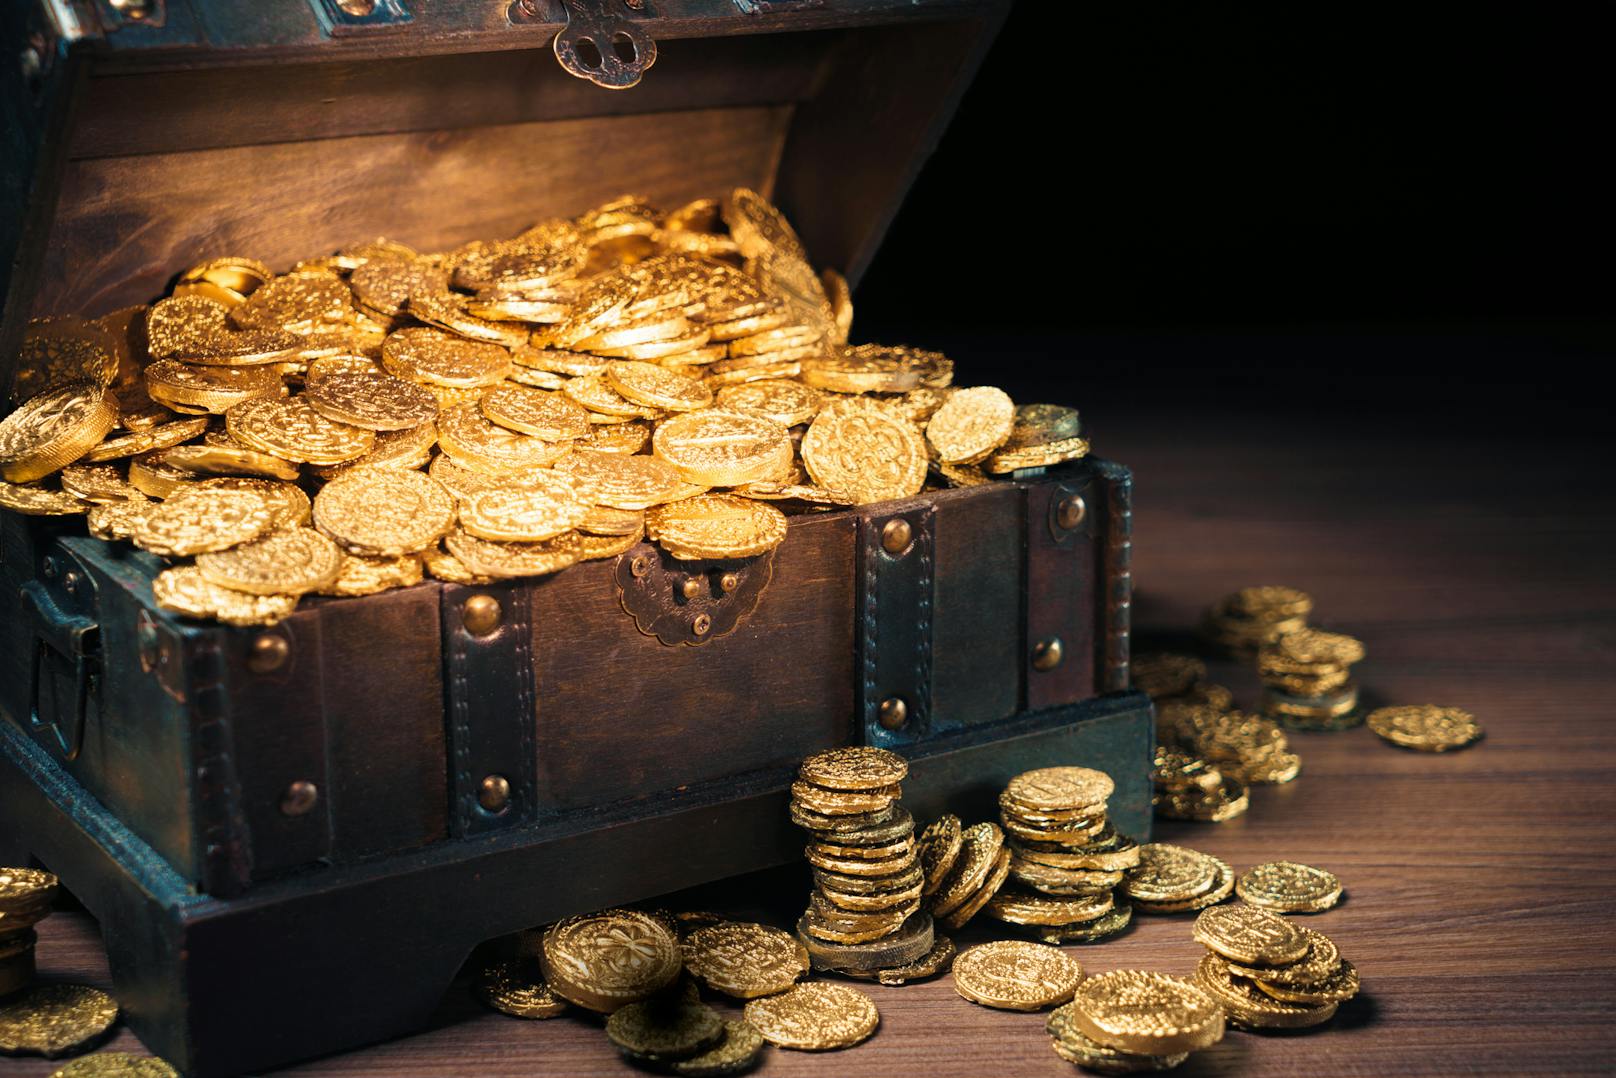 Bei einer Grabung in Israel stieß eine Gruppe von Jugendlichen auf einen Behälter mit Goldmünzen.